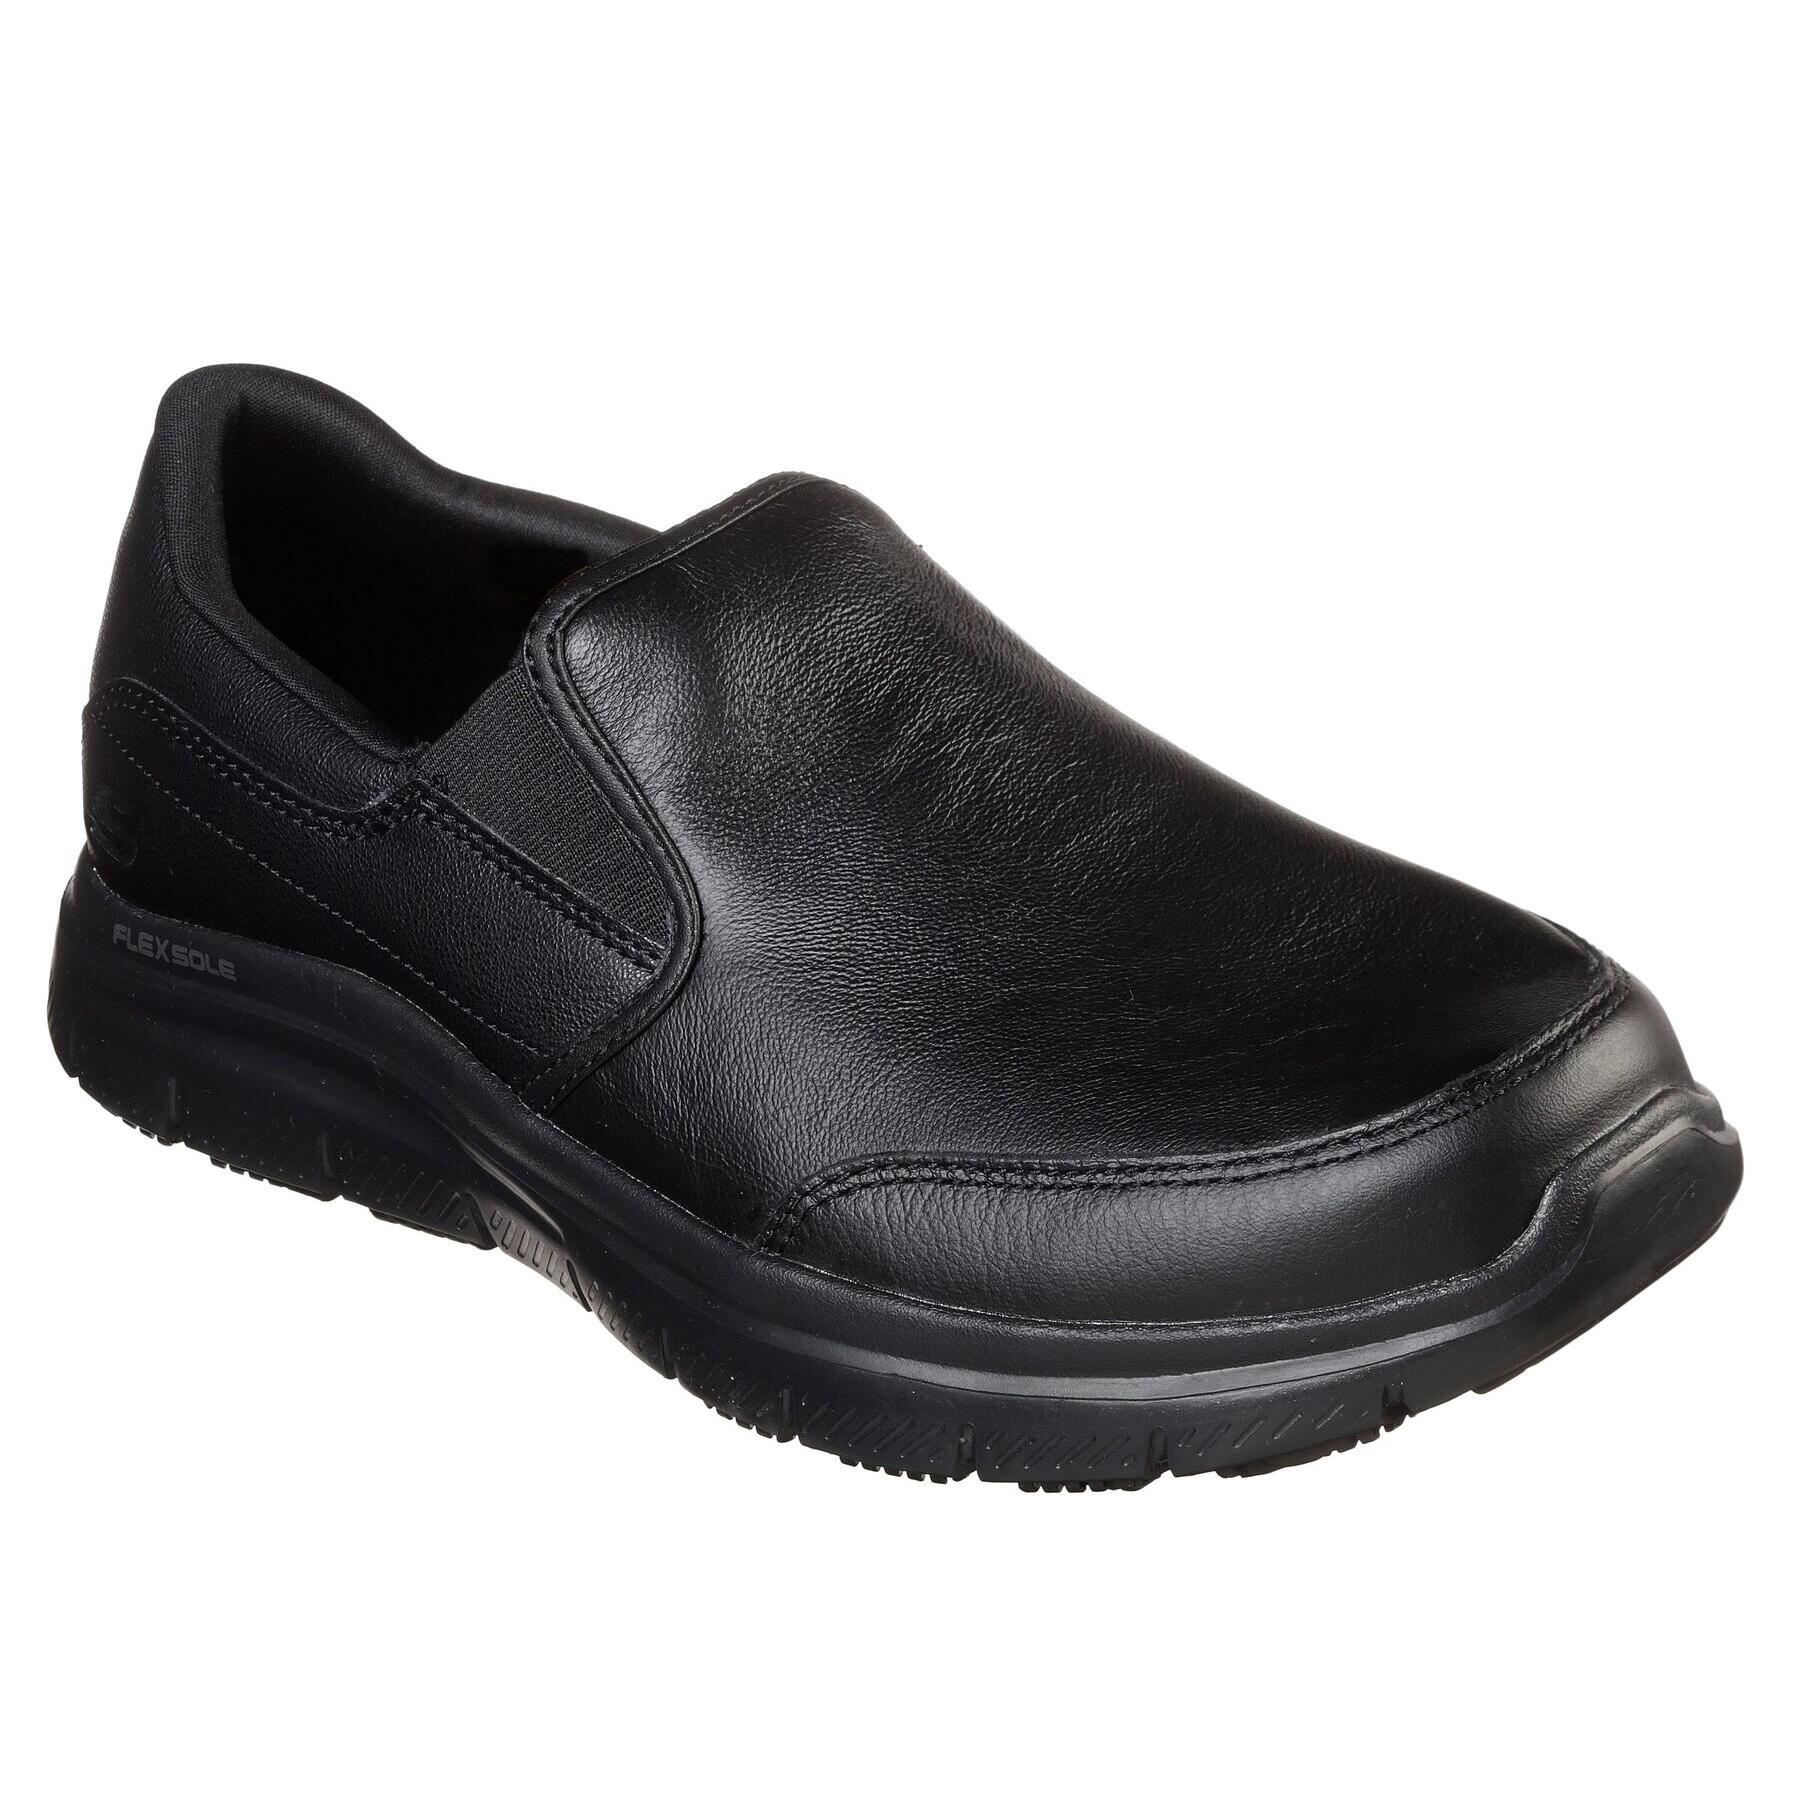 SKECHERS Mens Leather Flex Advantage SR Bronwood Slip On Shoes (Black)